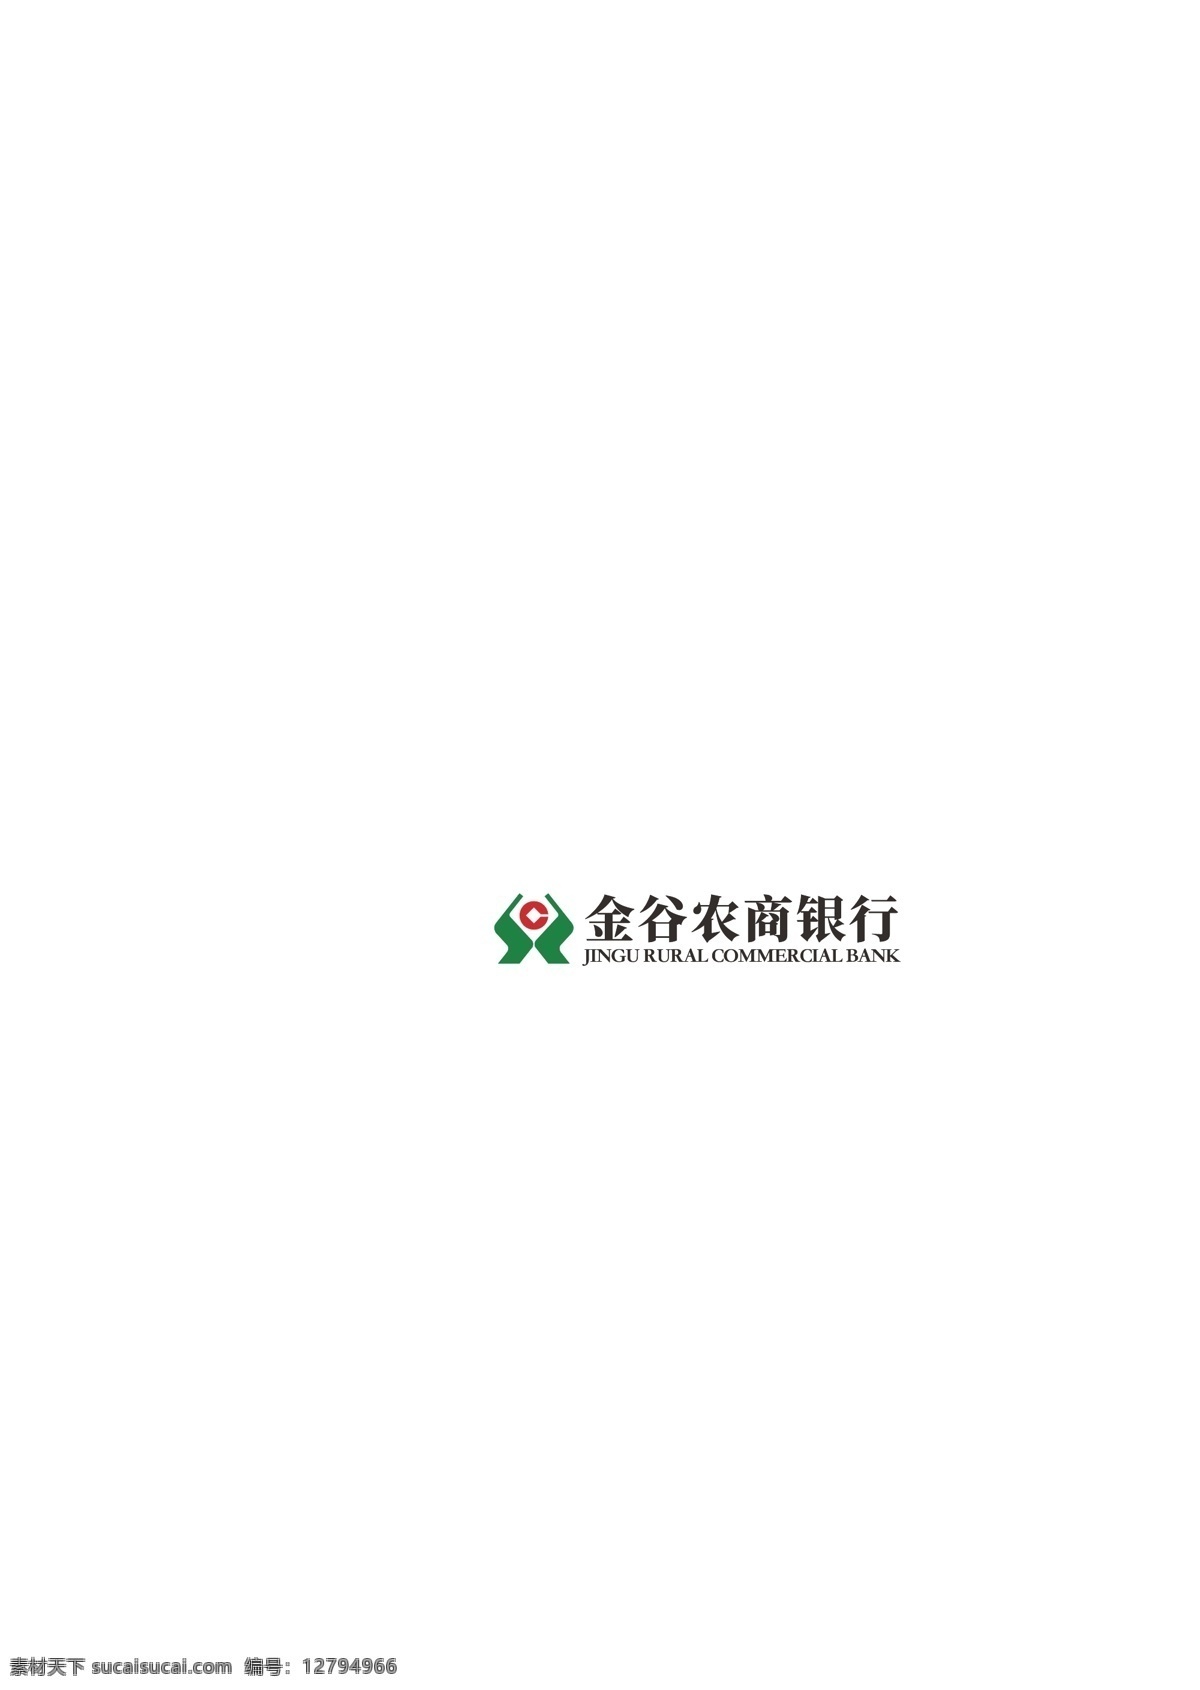 金谷 农 商行 logo 内蒙古 呼和浩特 金谷农商行 农村商业银行 图标 标志 标志图标 企业